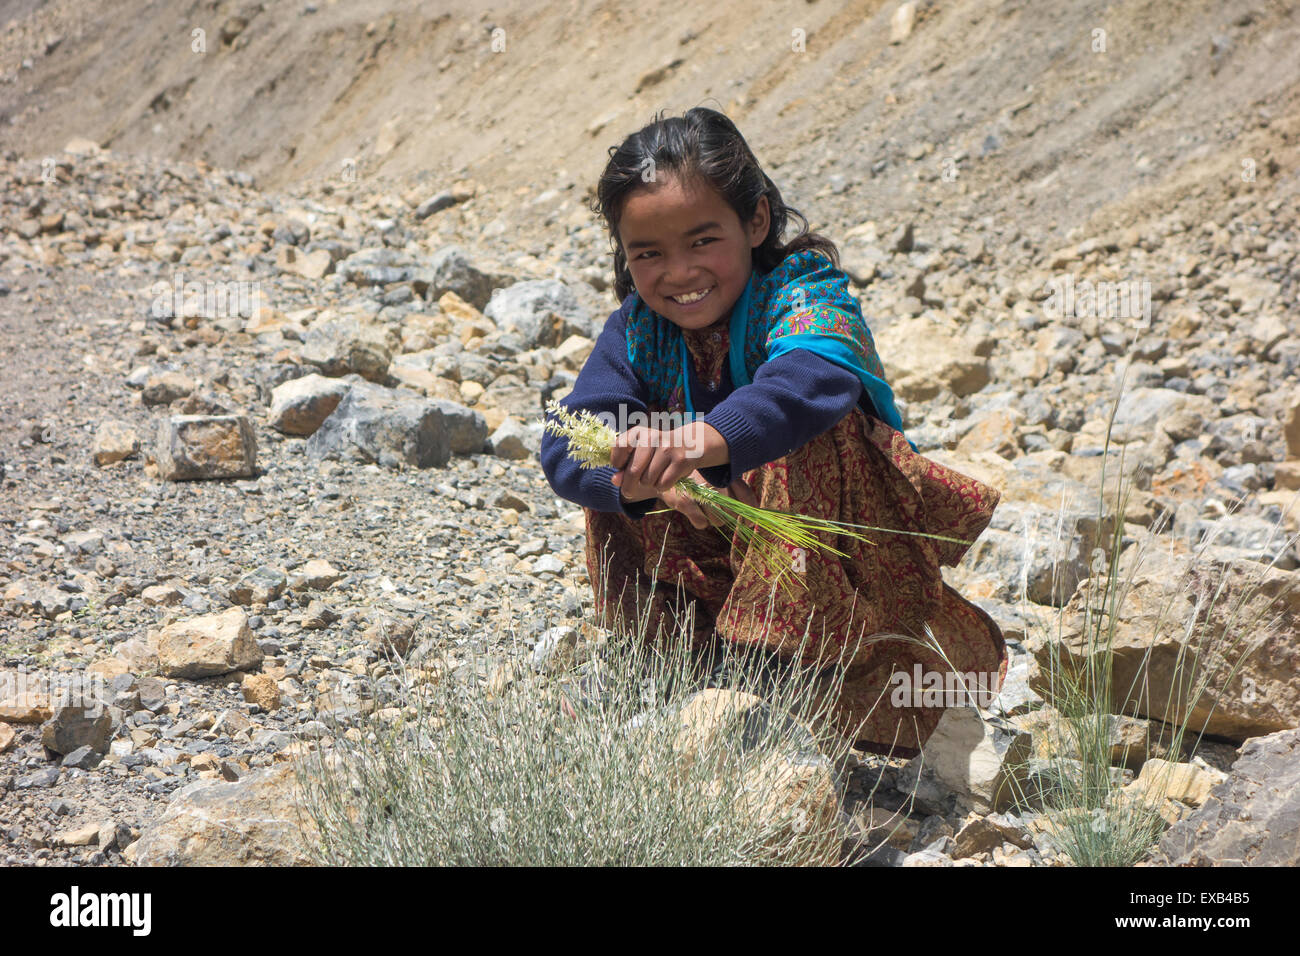 Spiti Valley - jeune fille à partir d'un village de haute altitude dans la vallée de Spiti, Himachal Pradesh, Inde himalayenne Banque D'Images